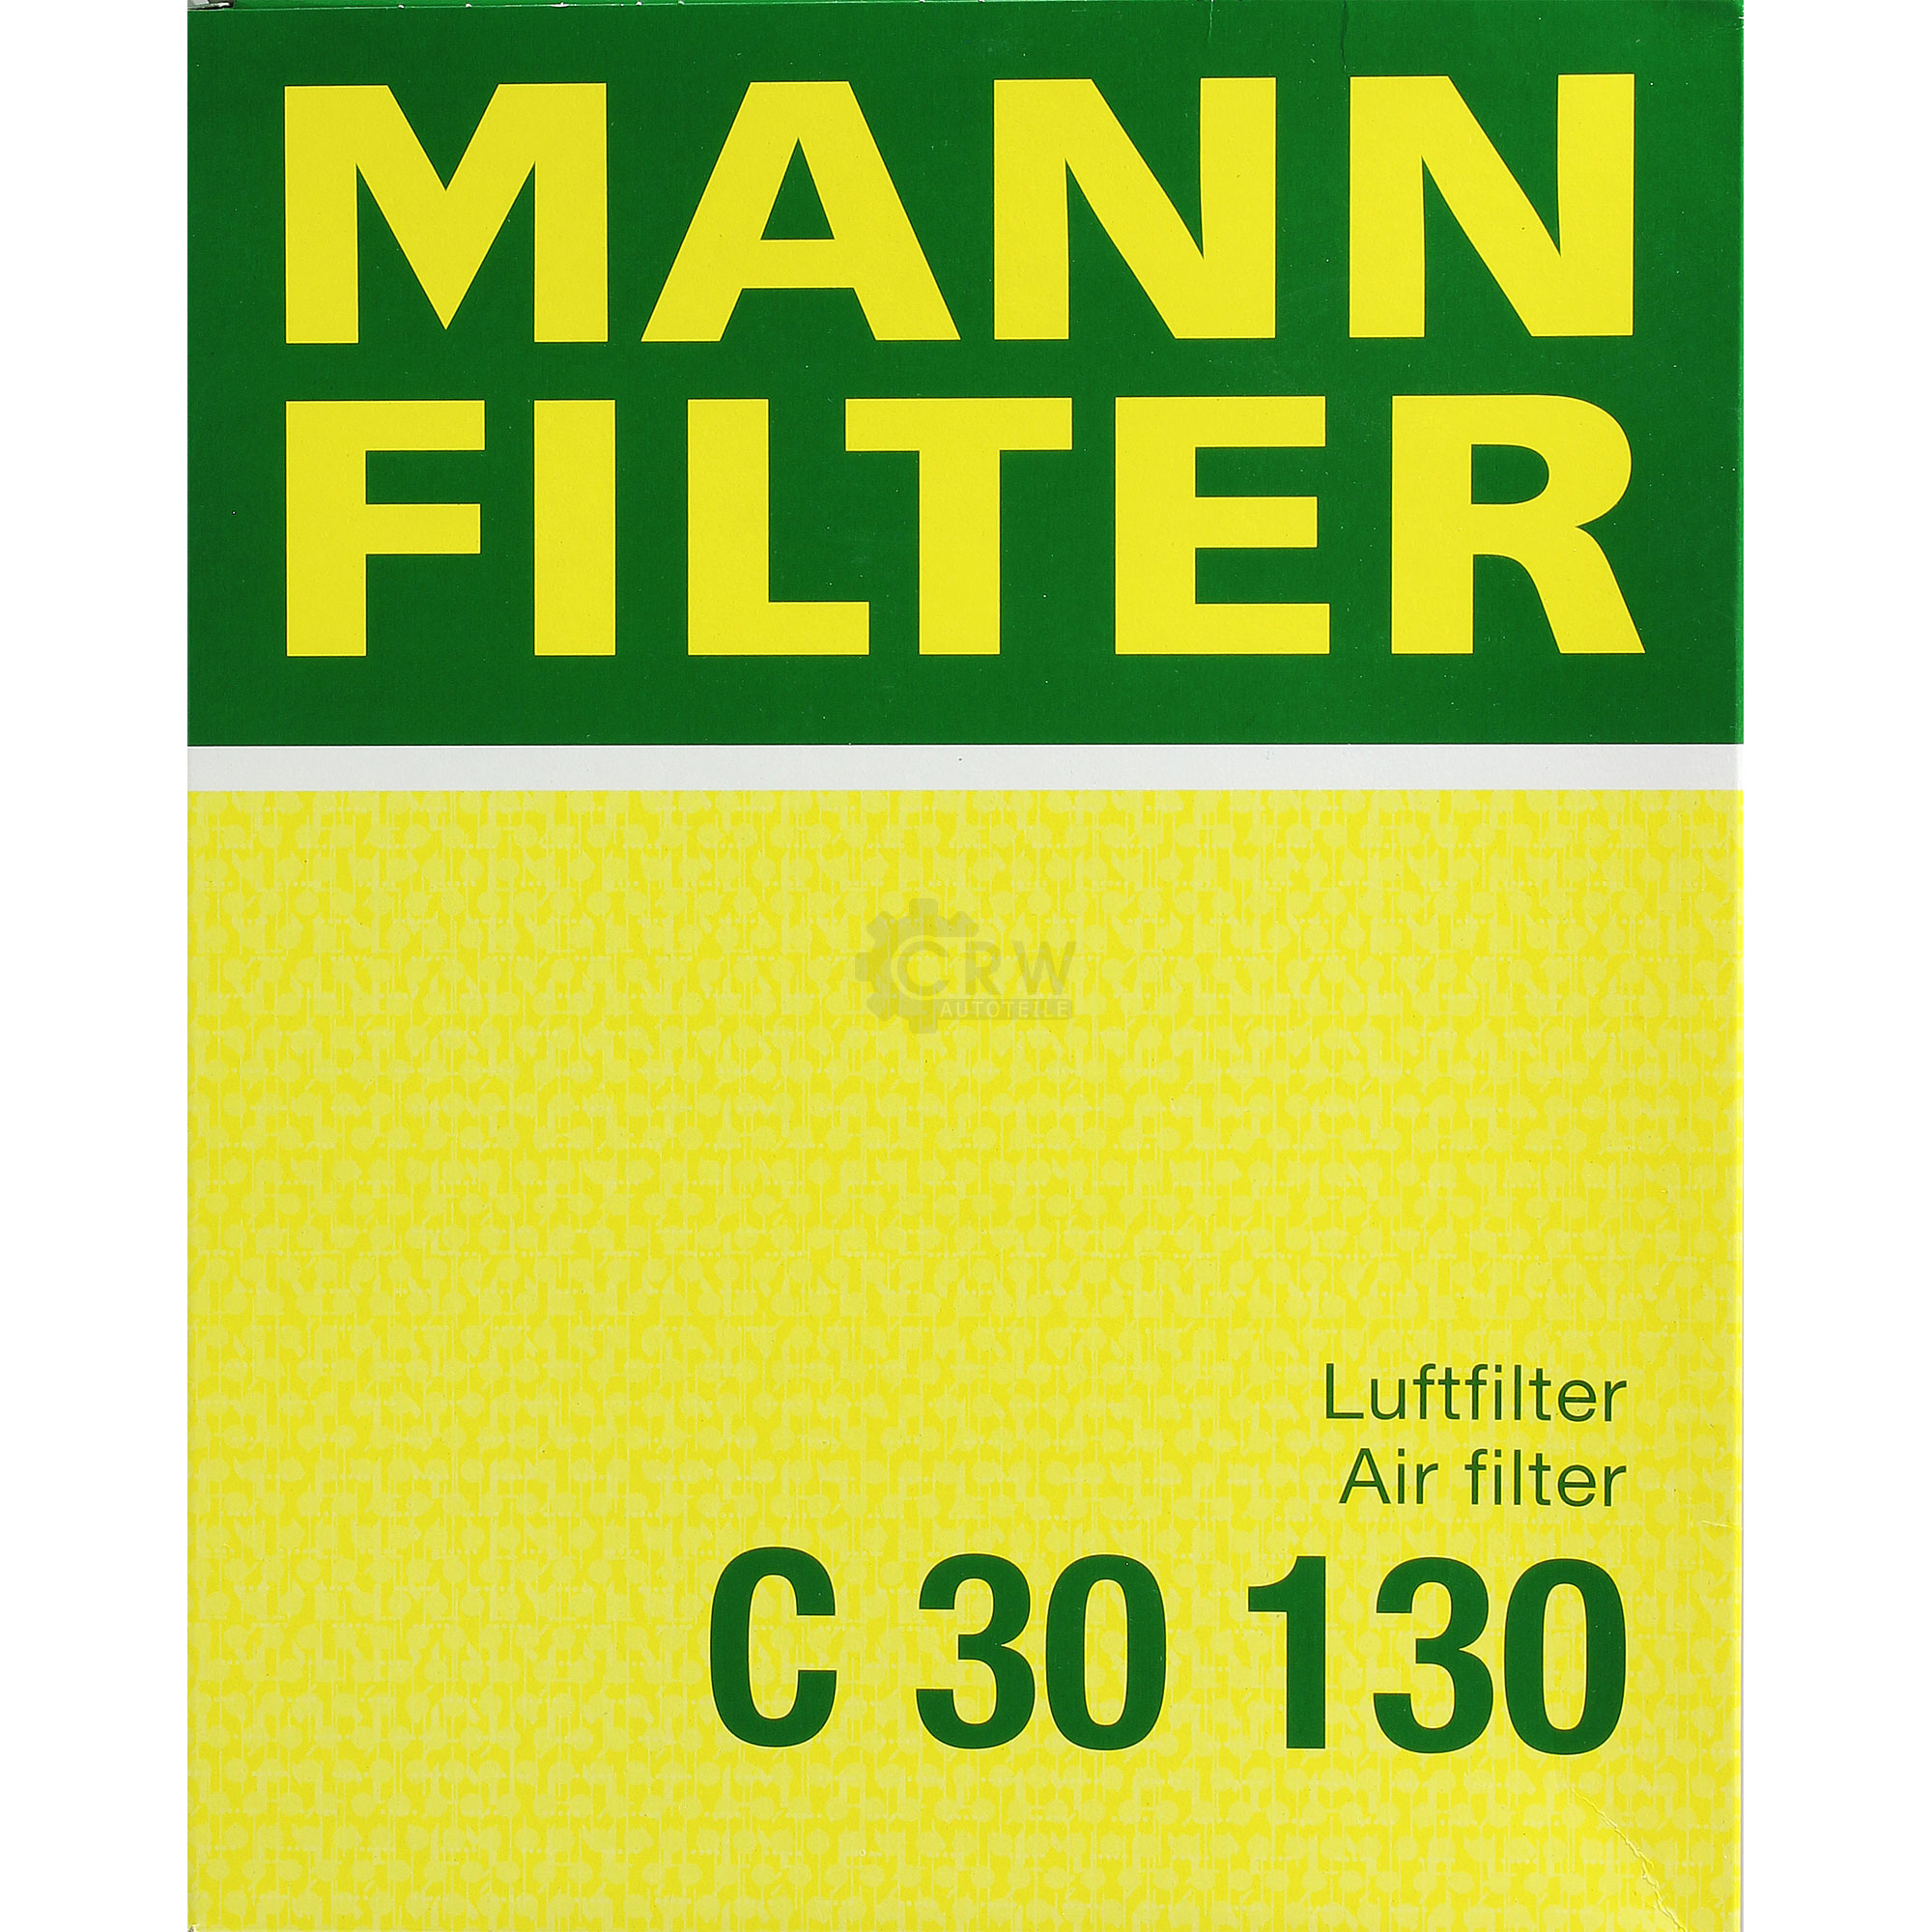 MANN-FILTER Luftfilter für Opel Astra H L48 1.4 1.6 A04 1.2 Zafira B A05 1.8